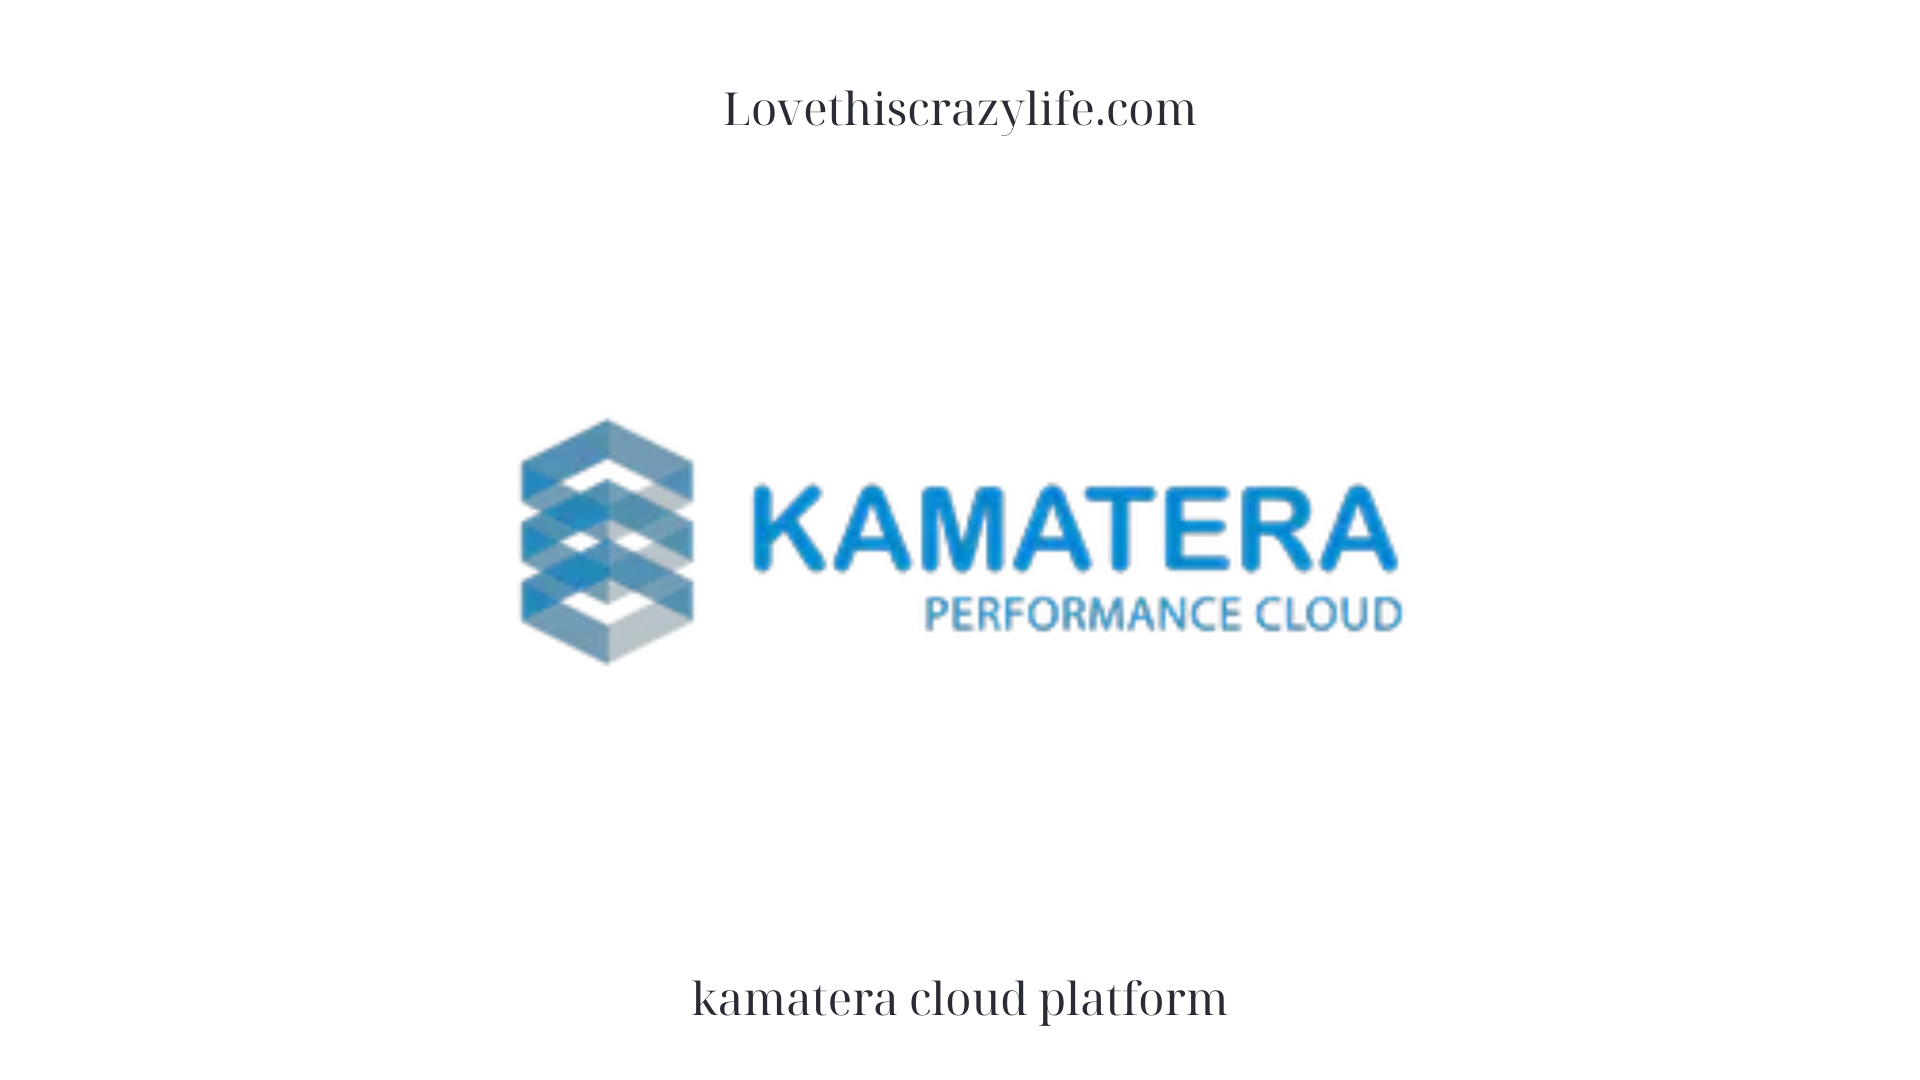 kamatera cloud platform